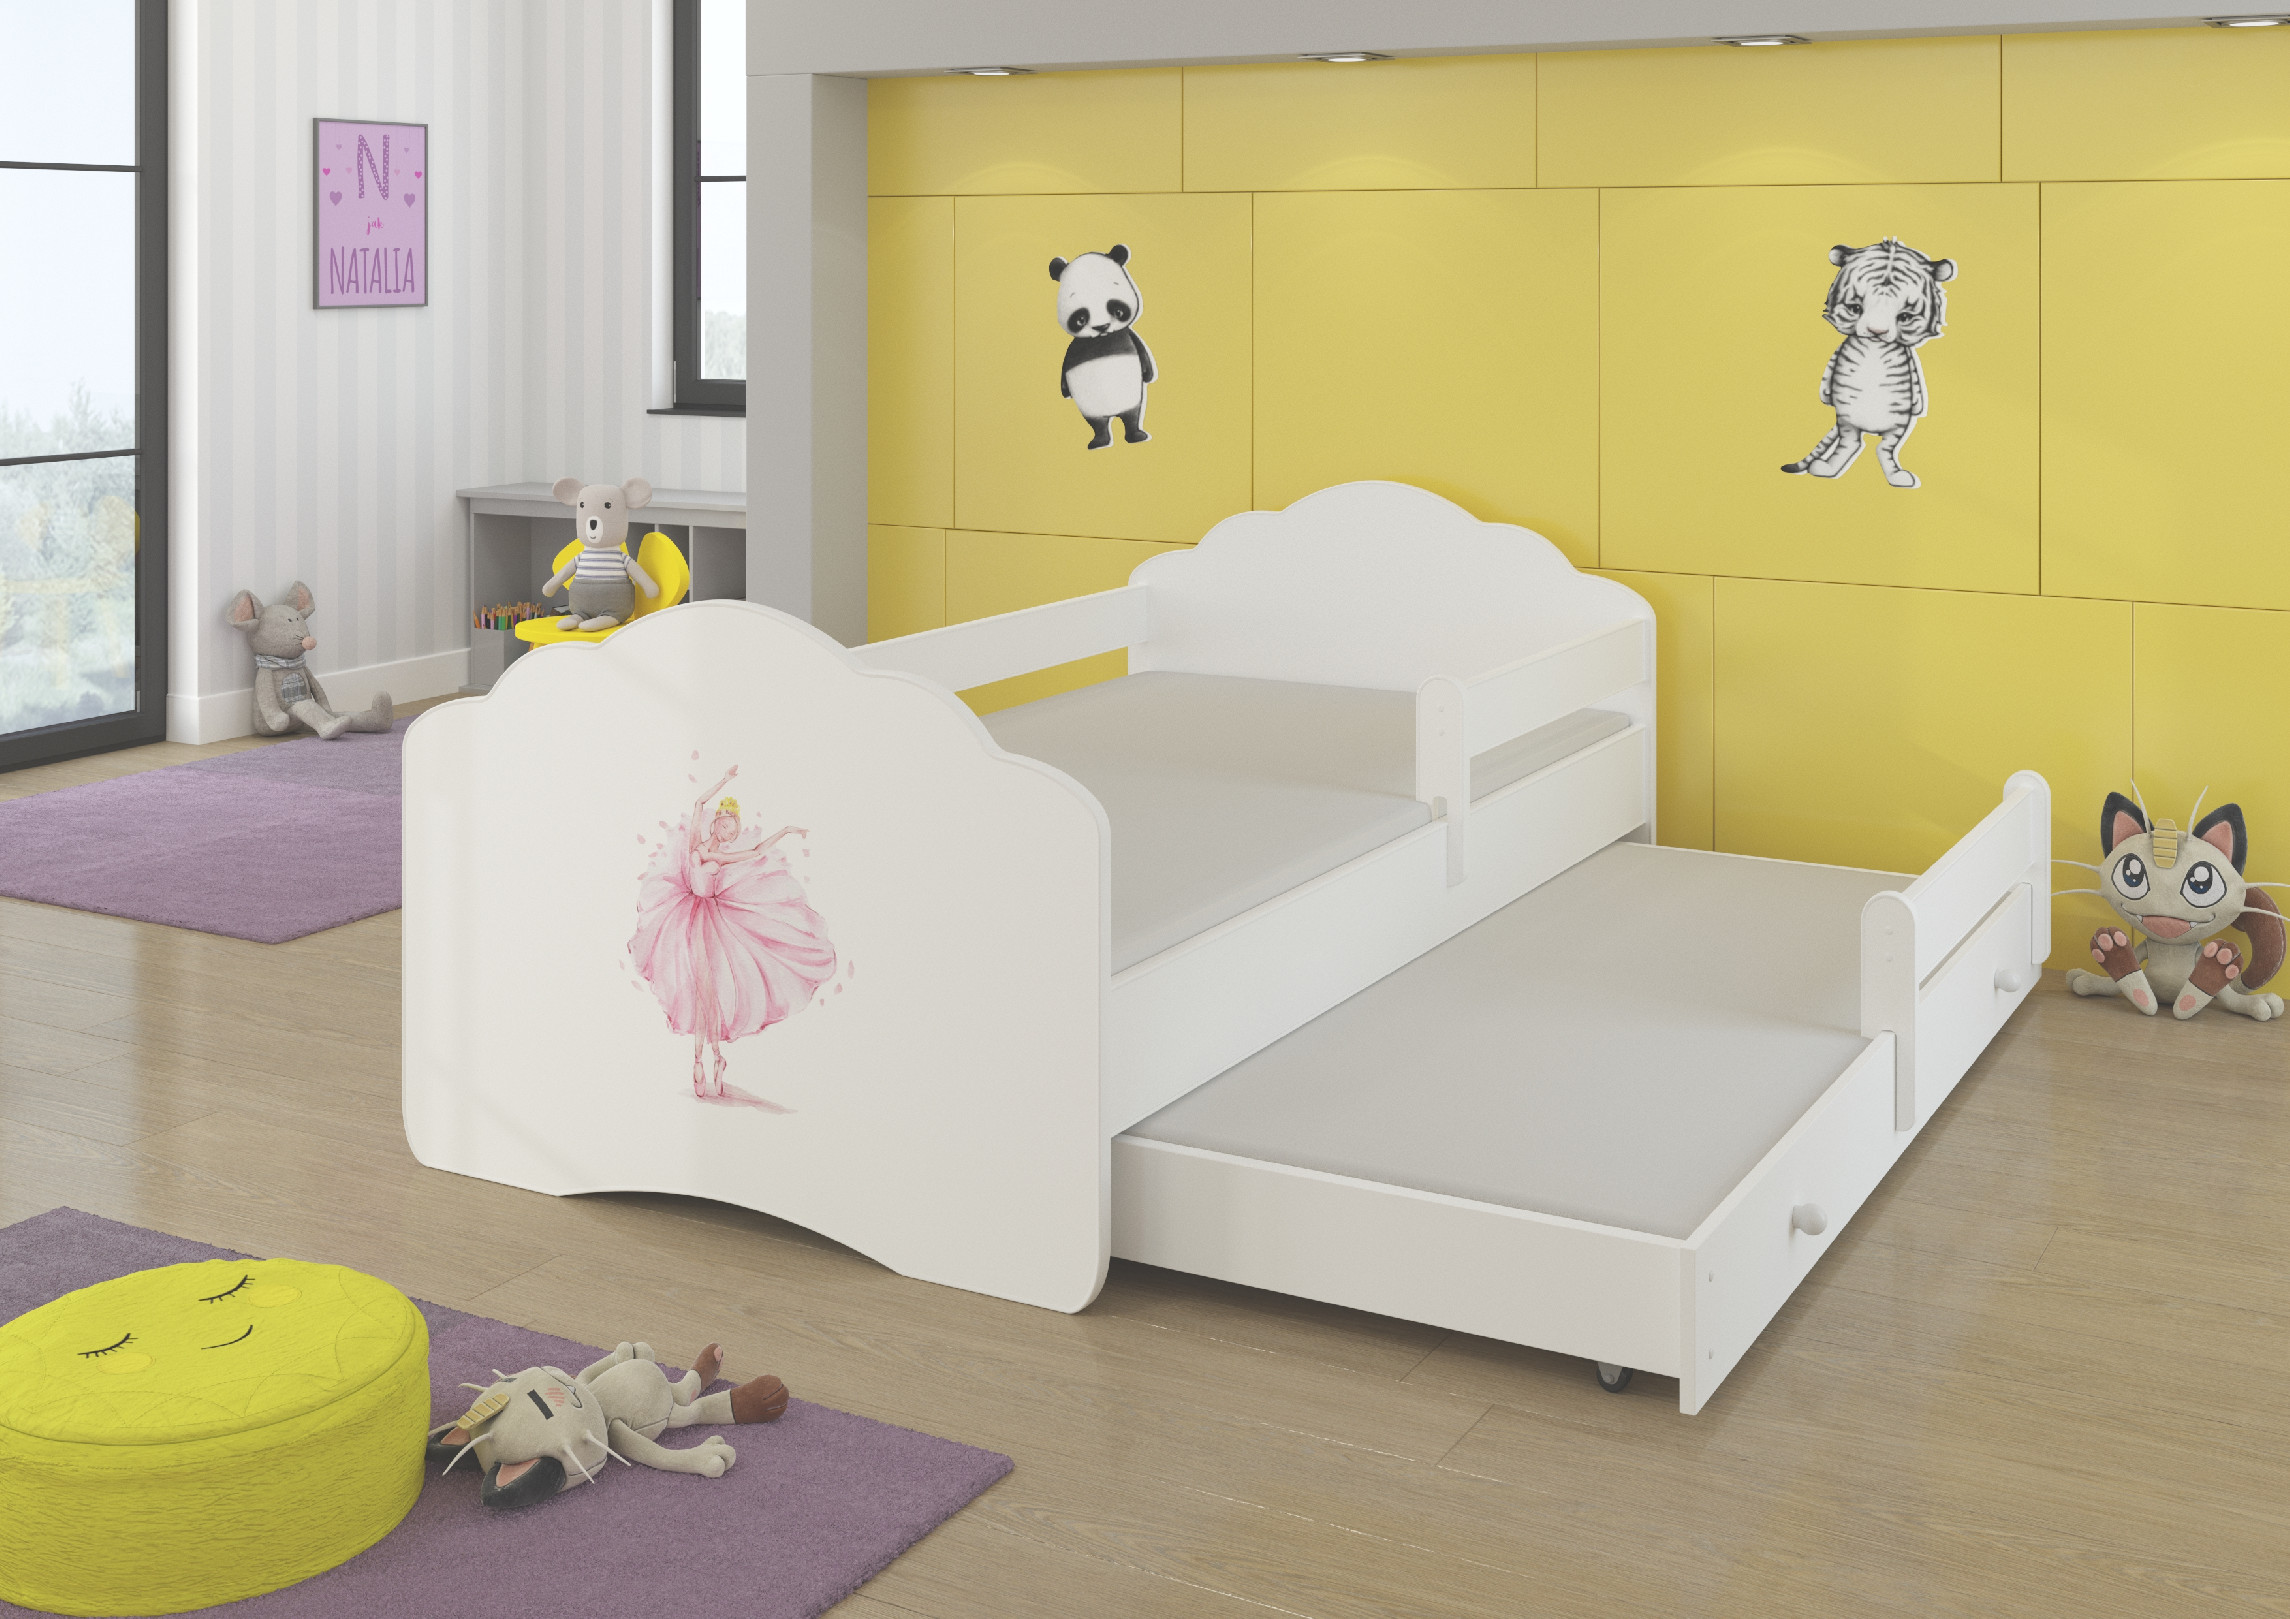 Dětská postel s obrázky - čelo Casimo II bar Rozměr: 160 x 80 cm, Obrázek: Baletka